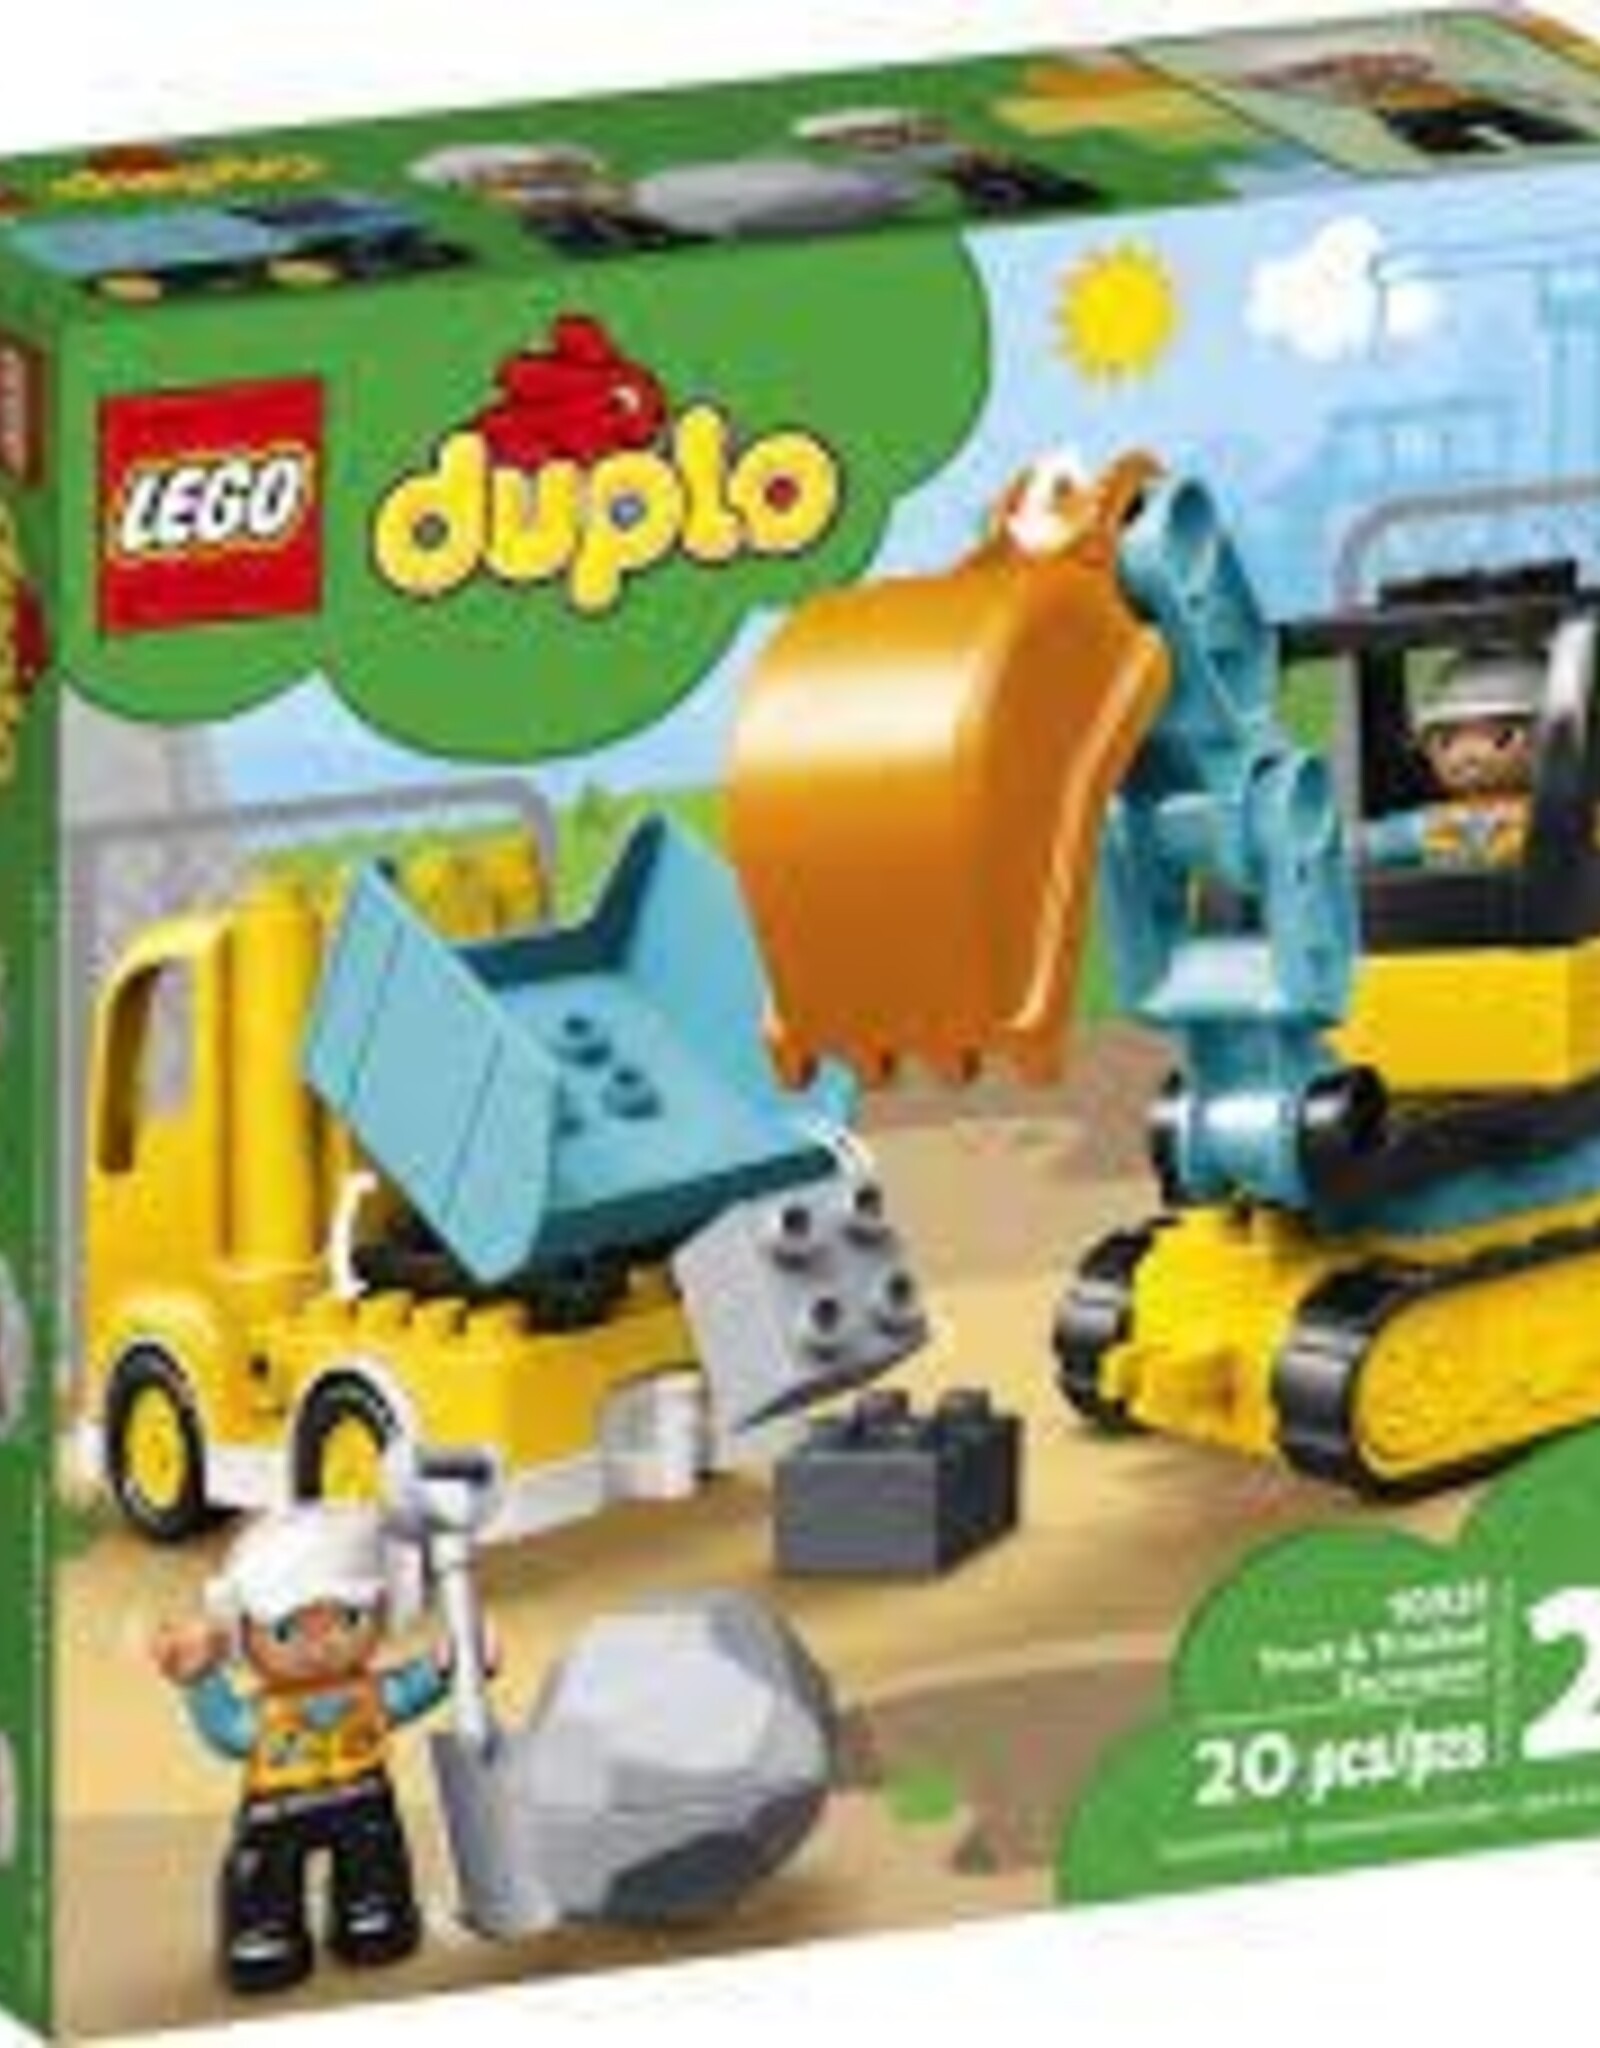 Lego Truck & Tracked Excavator